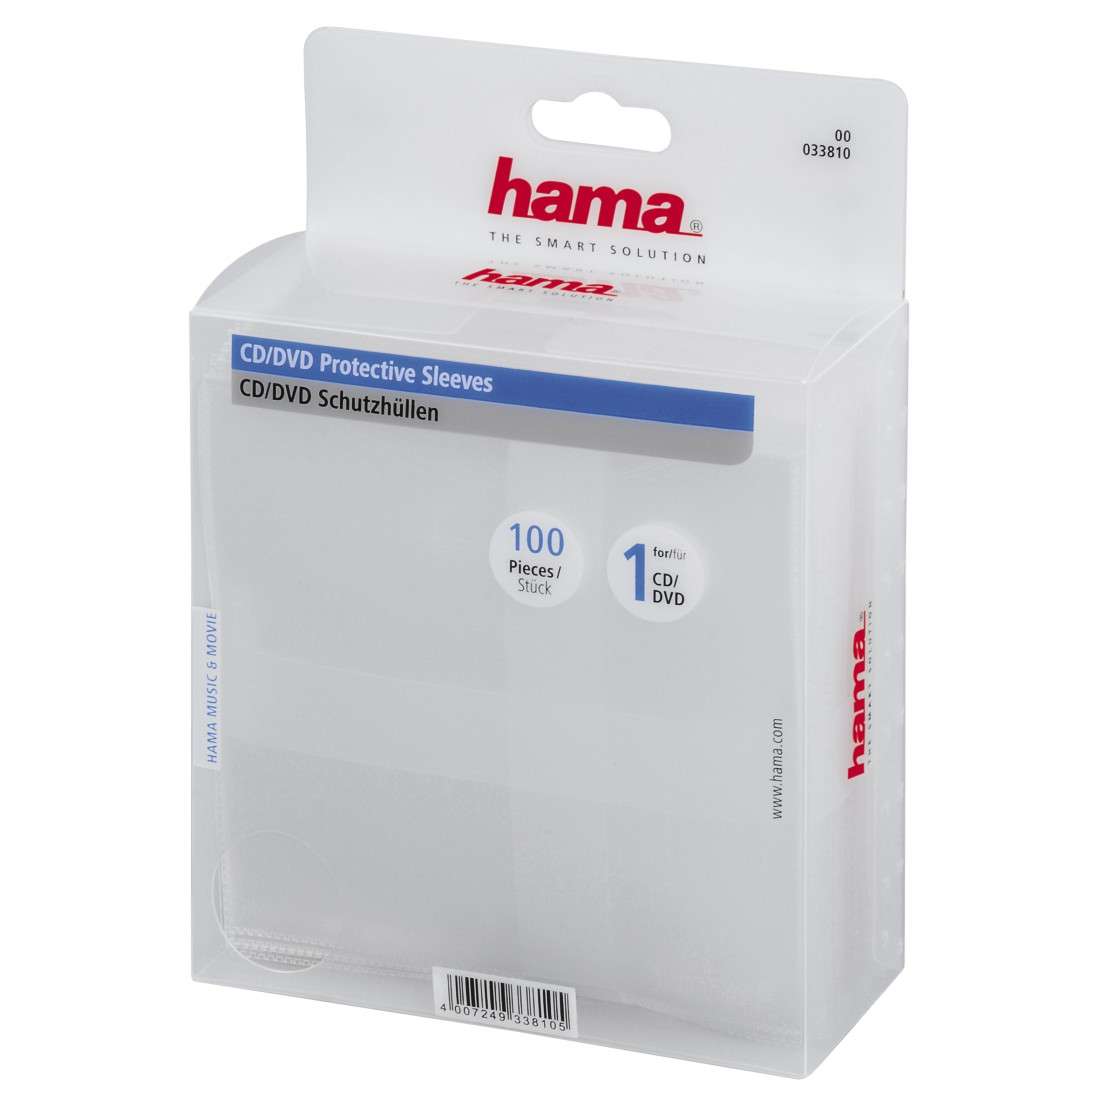 HAMA CD-/DVD-Schutzhüllen 100, Transparent